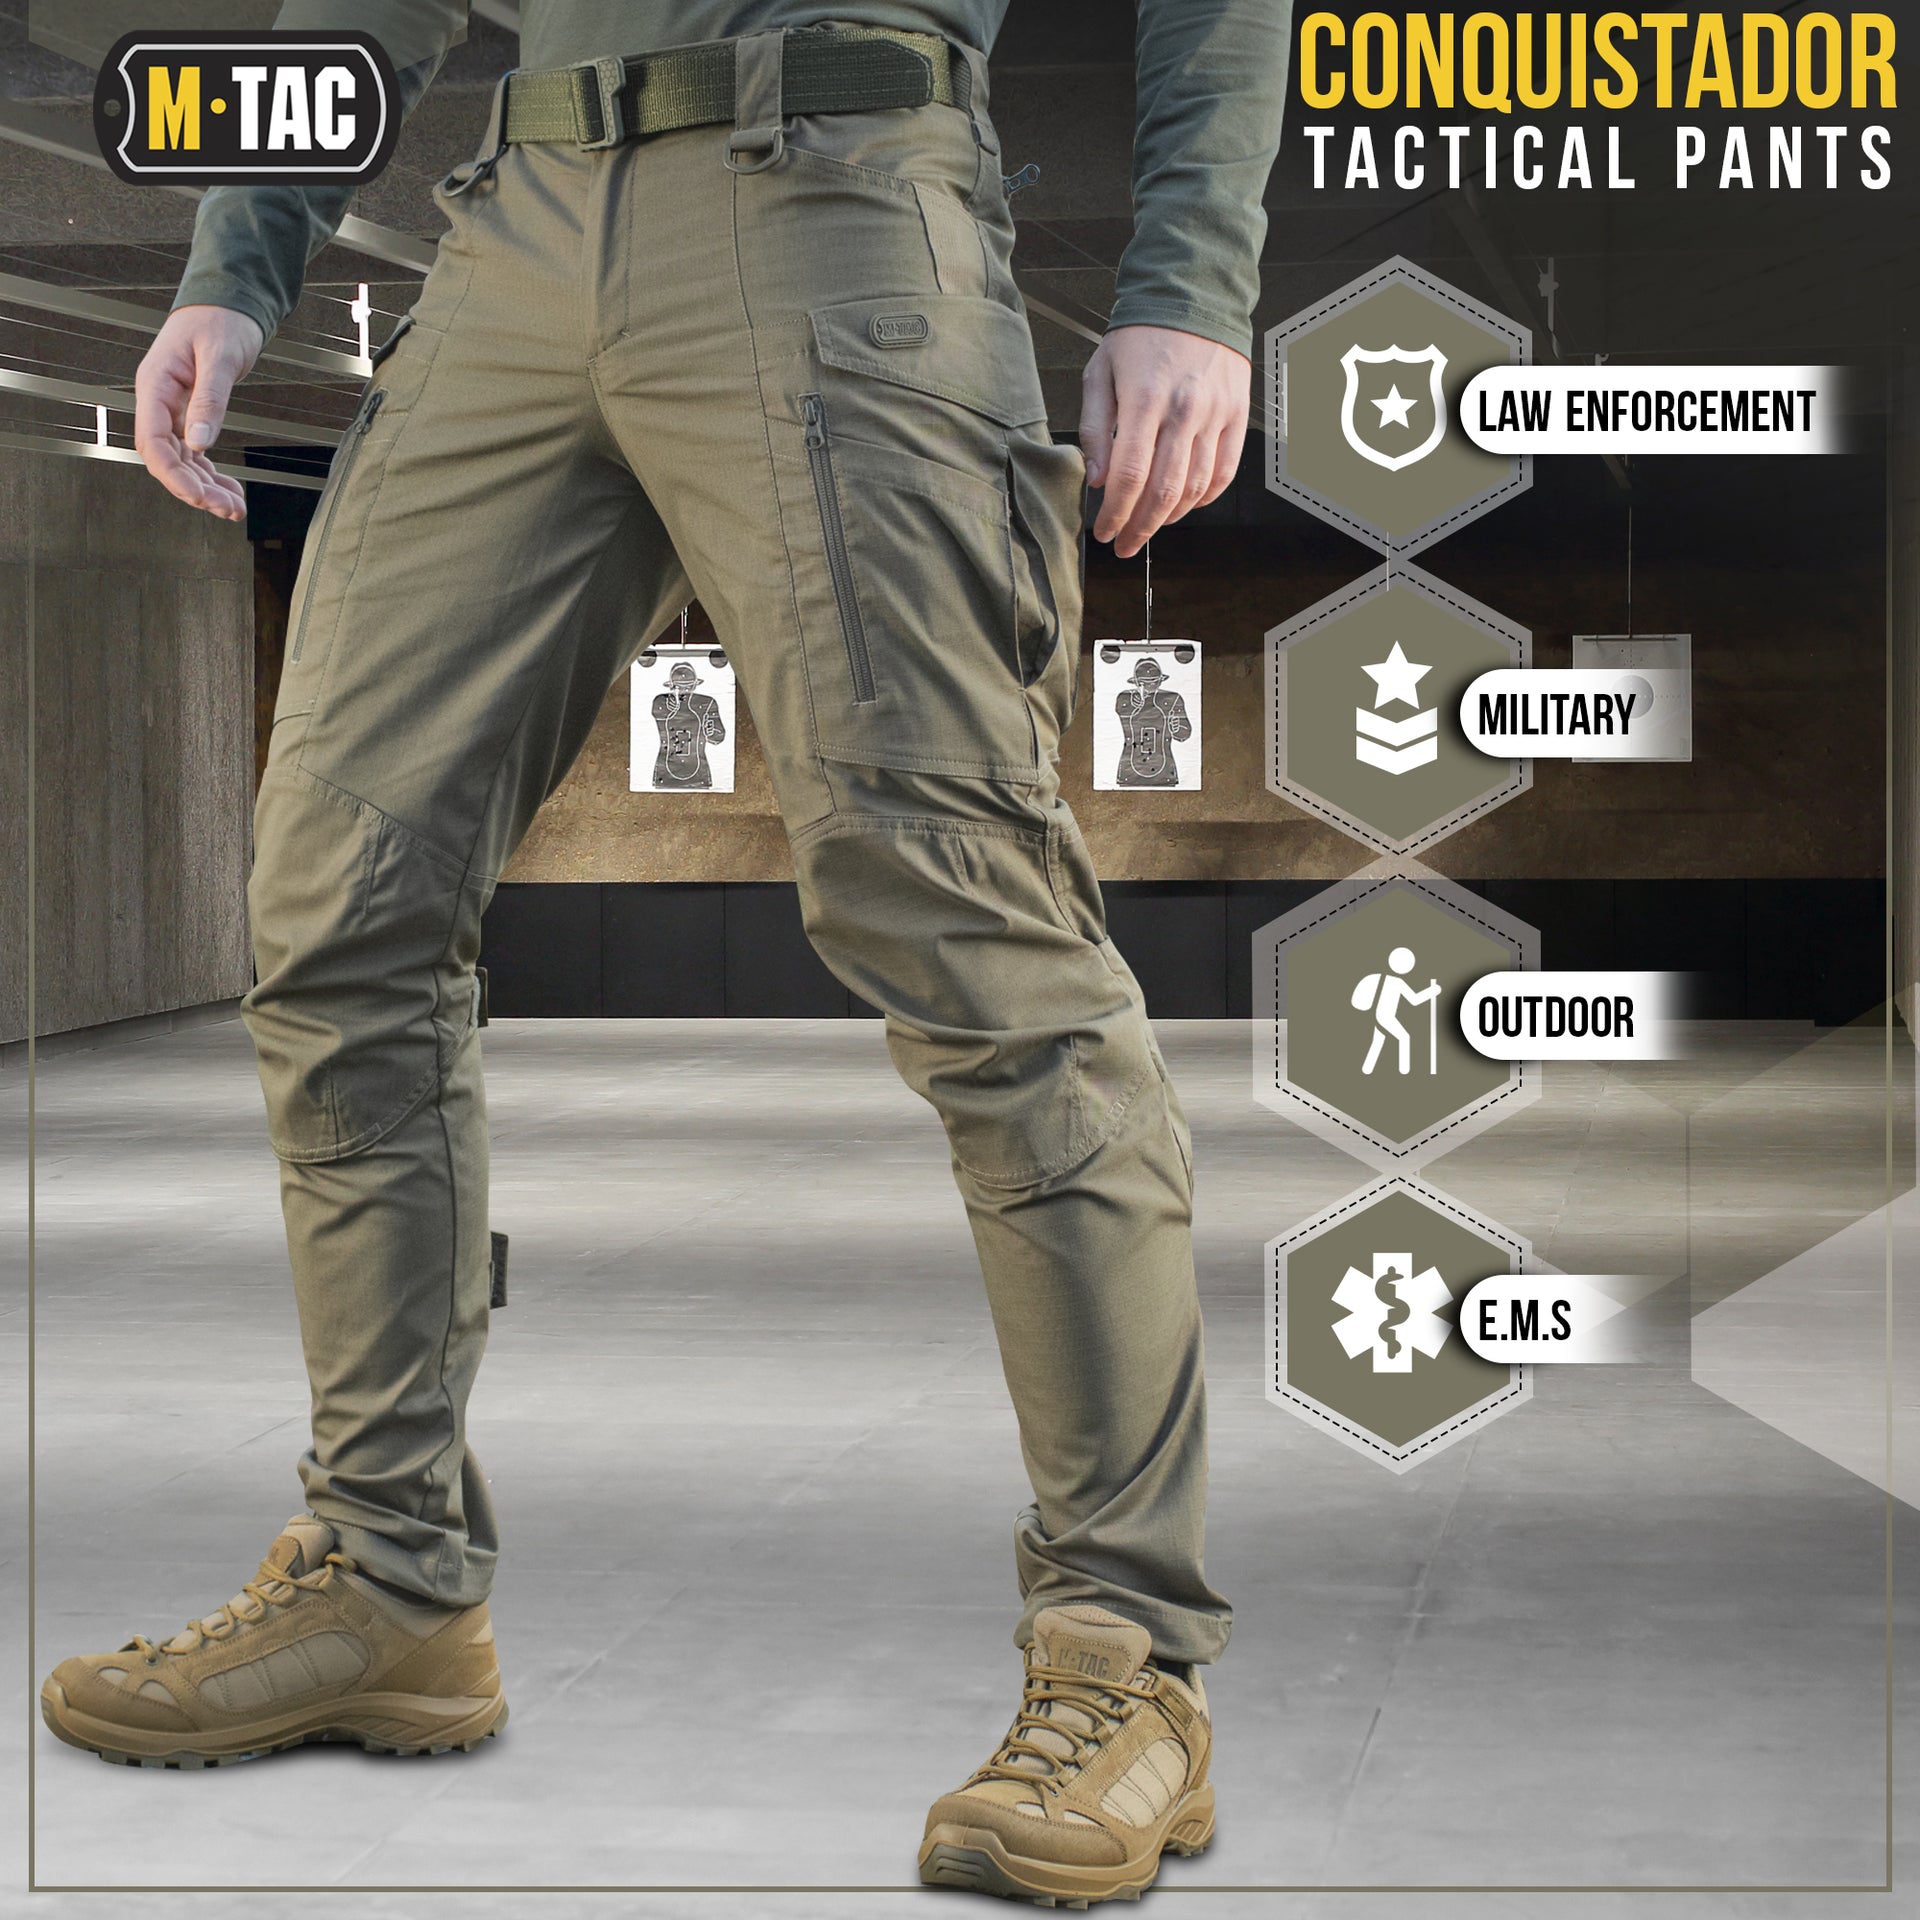 M-Tac tactical pants Conquistador Gen I Flex